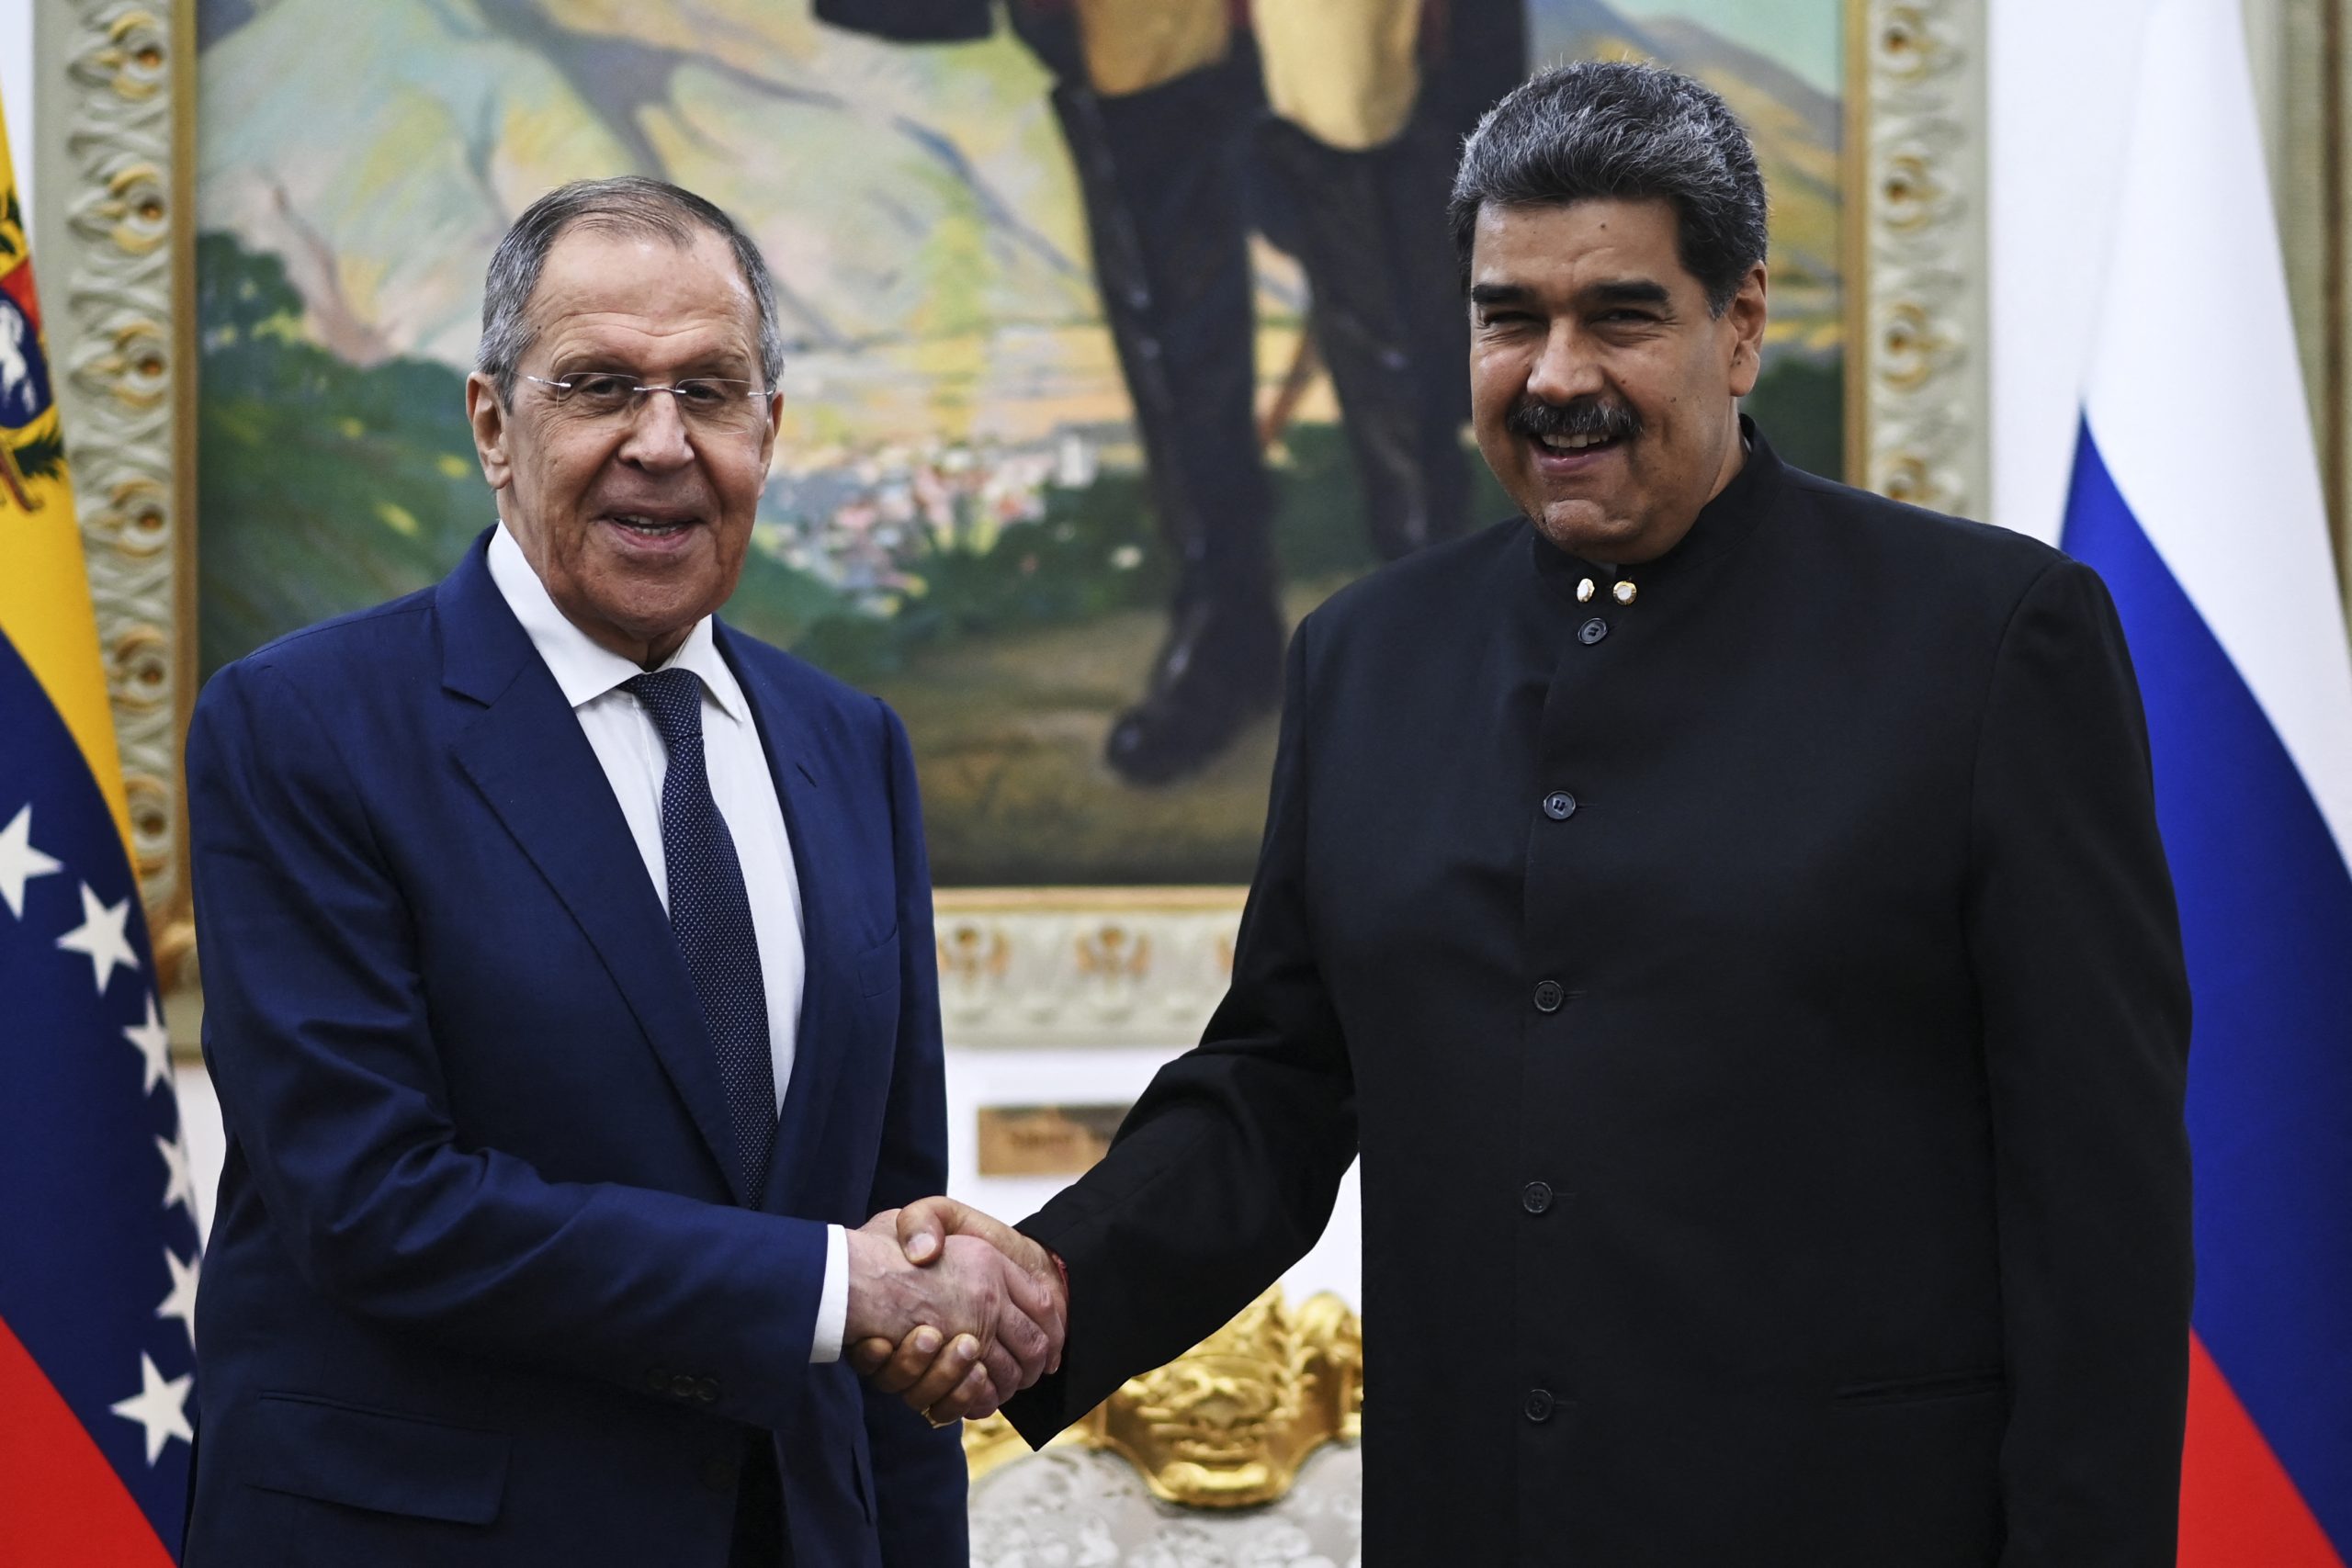 El canciller ruso se reunió con Maduro y pidió “unir fuerzas contra el chantaje”